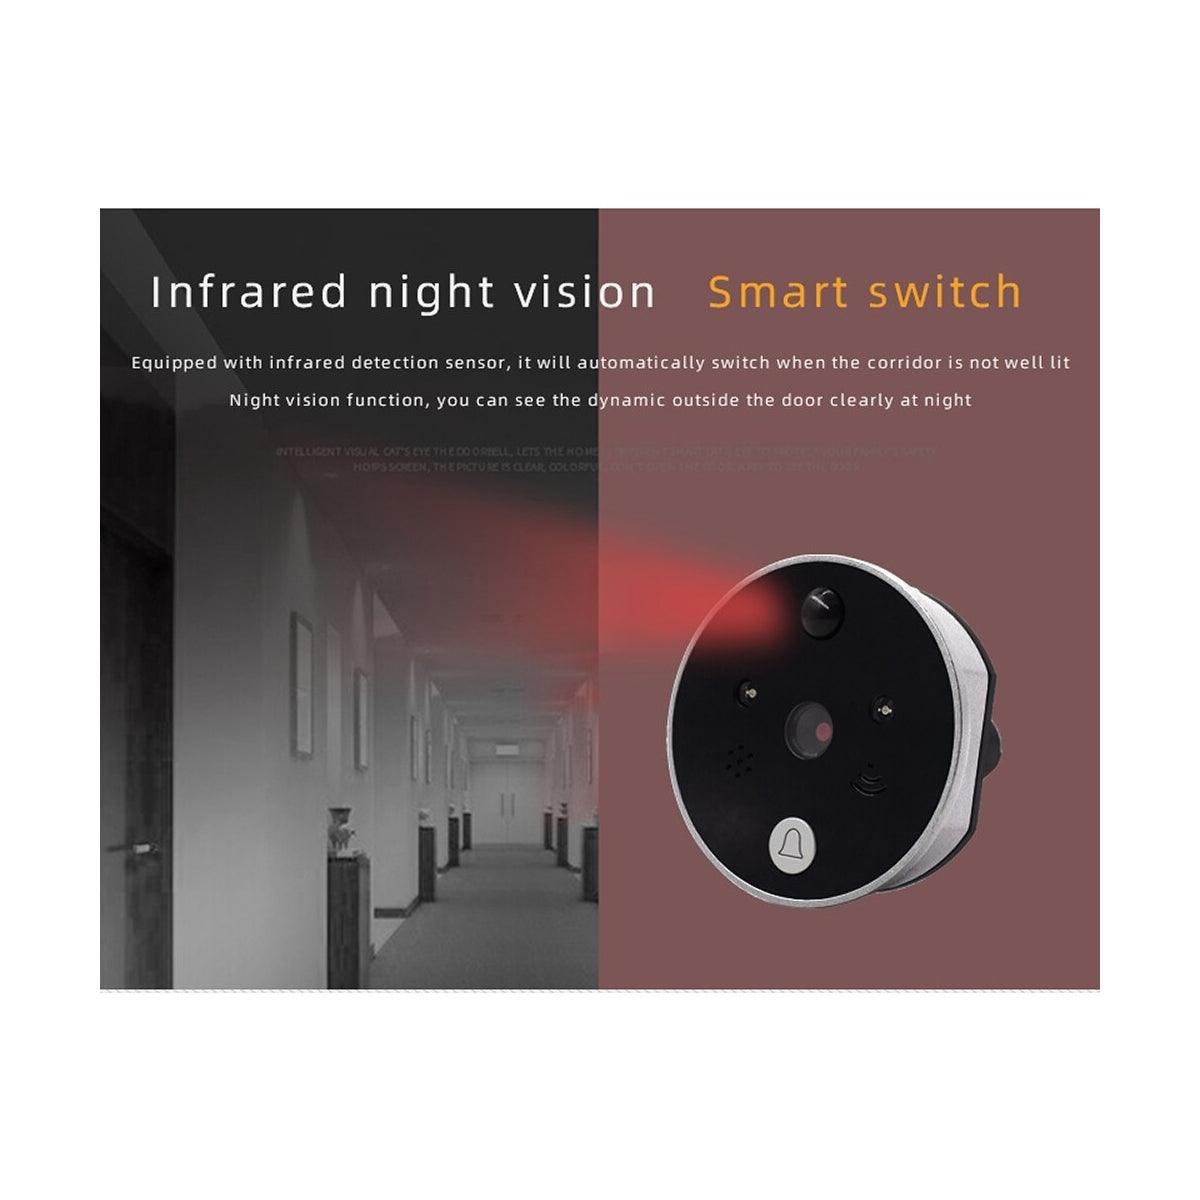 GloboStar® 86017 Ψηφιακή Έξυπνη Camera Εξώπορτας 90° Μοιρών με Έγχρωμη Οθόνη 2.8" Inches - Νυχτερινή Όραση με LED IR - Κουδούνι - Εσωτερική Μνήμη Αποθήκευσης - Λειτουργεί με 4 Μπαταρίες AAA - ledmania.gr